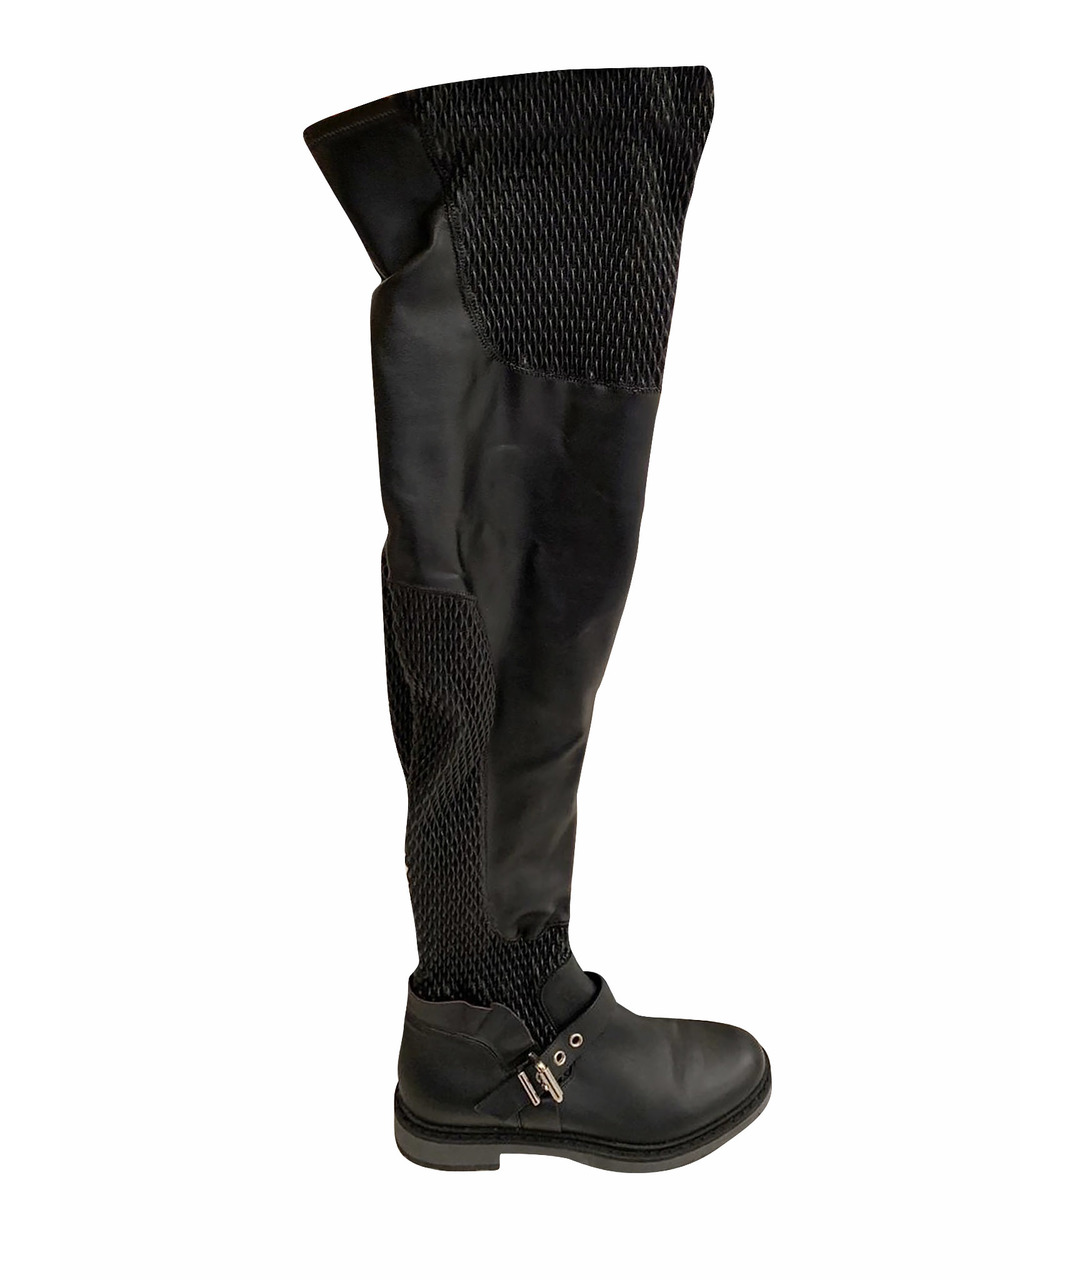 FENDI Черные кожаные ботфорты, фото 1